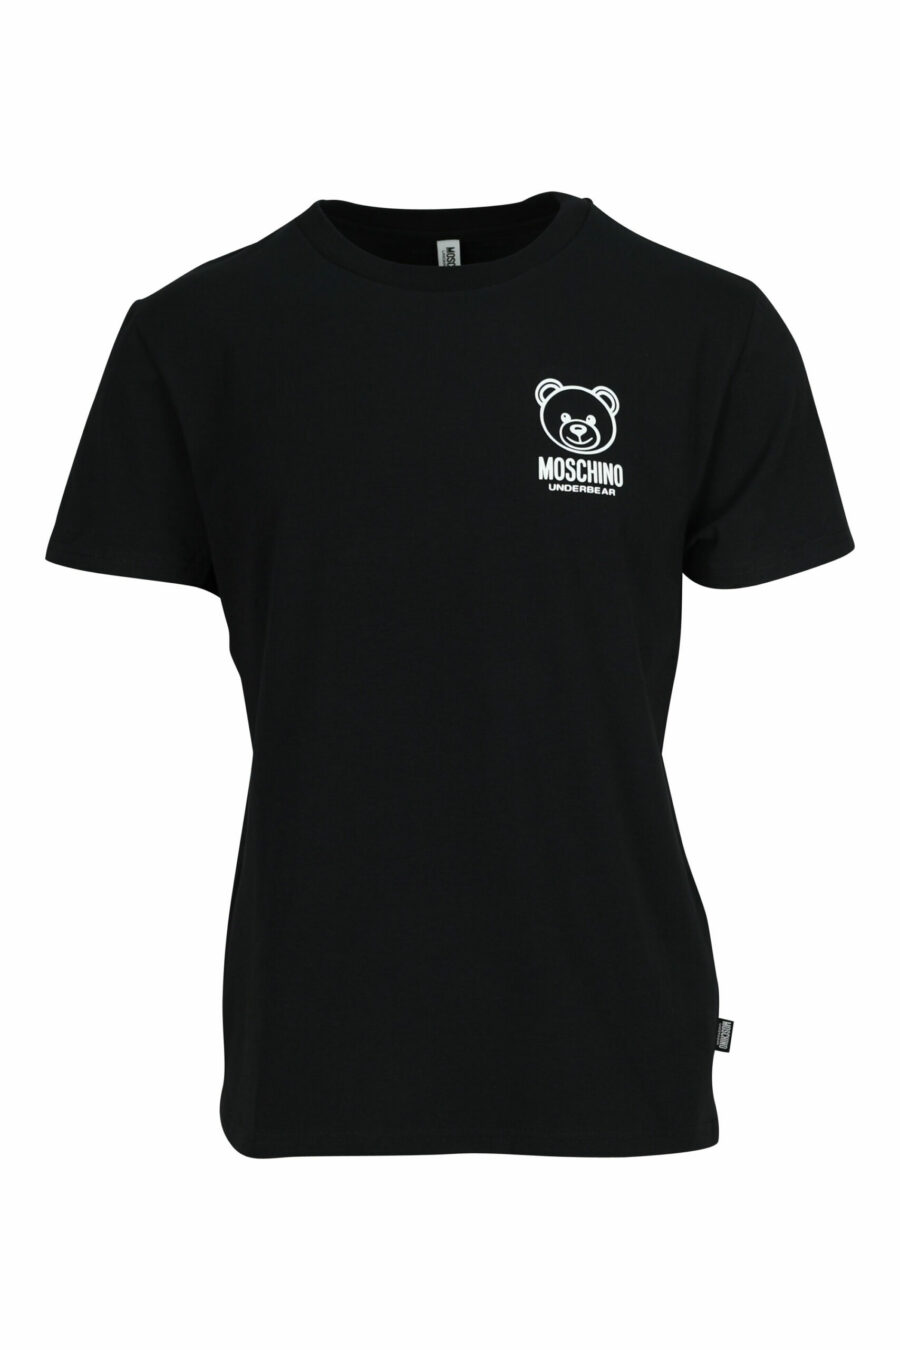 Schwarzes T-Shirt mit weiß gummiertem Bären-Minilogo "underbear" - 667113602639 skaliert